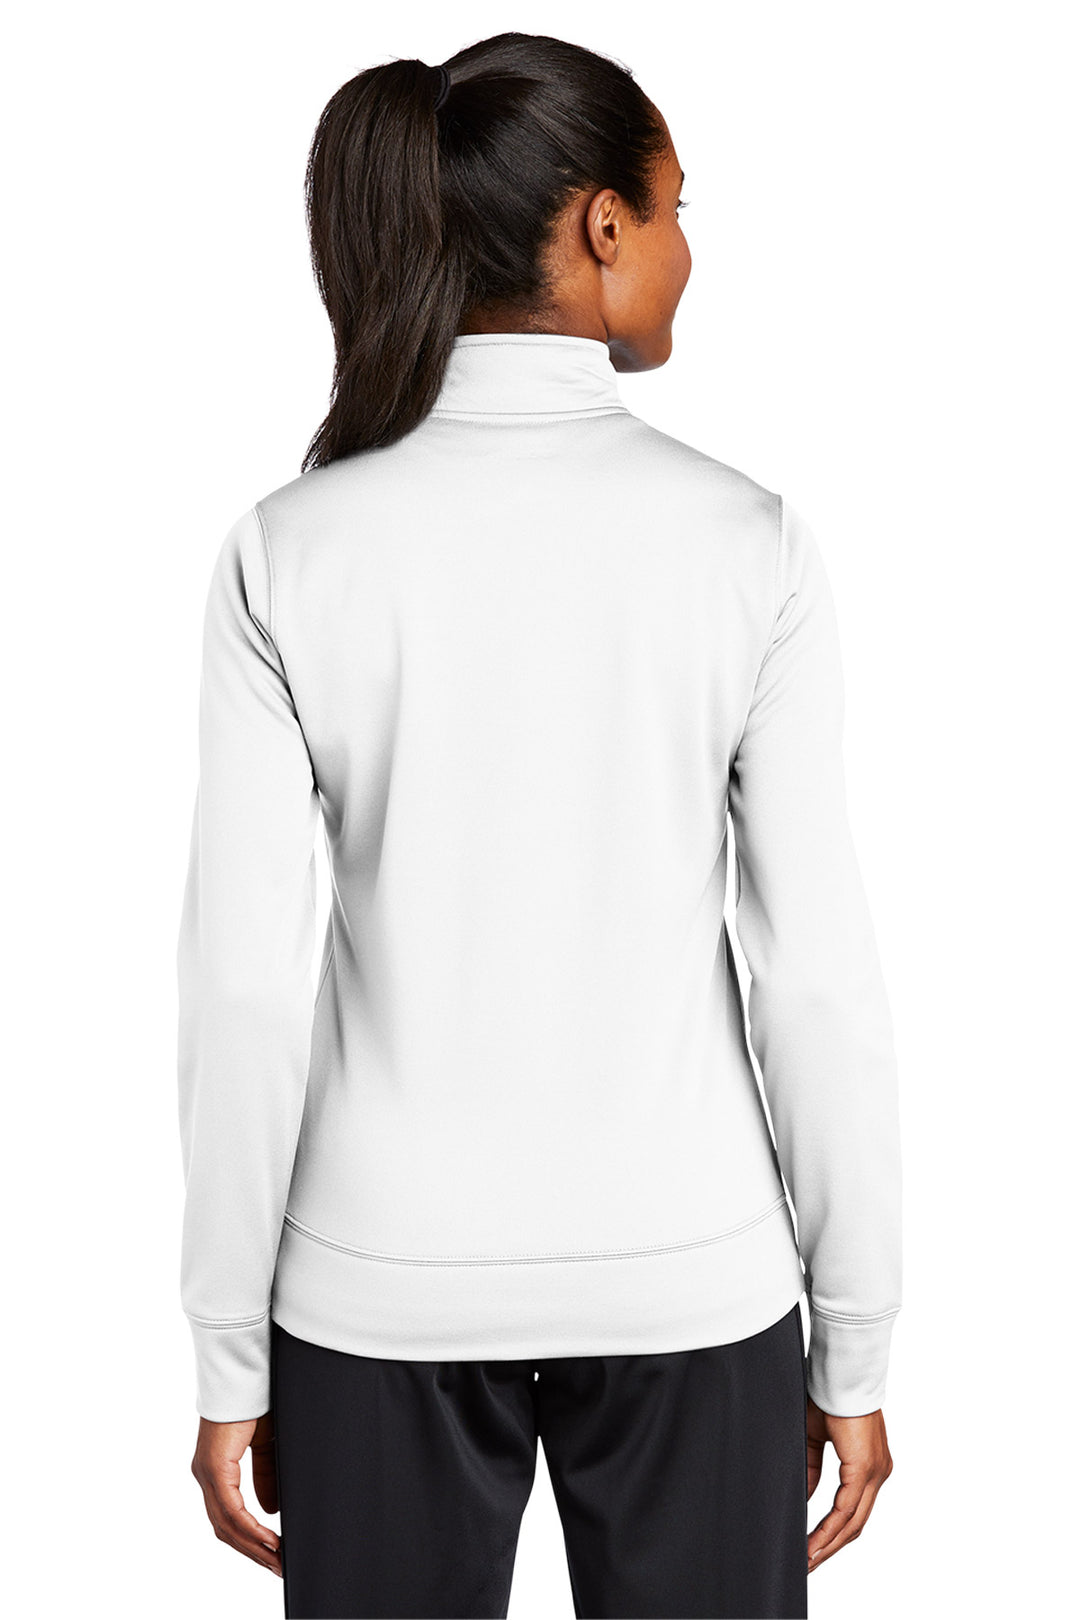 Ladies Sport-Wick Fleece Full-Zip Jacket